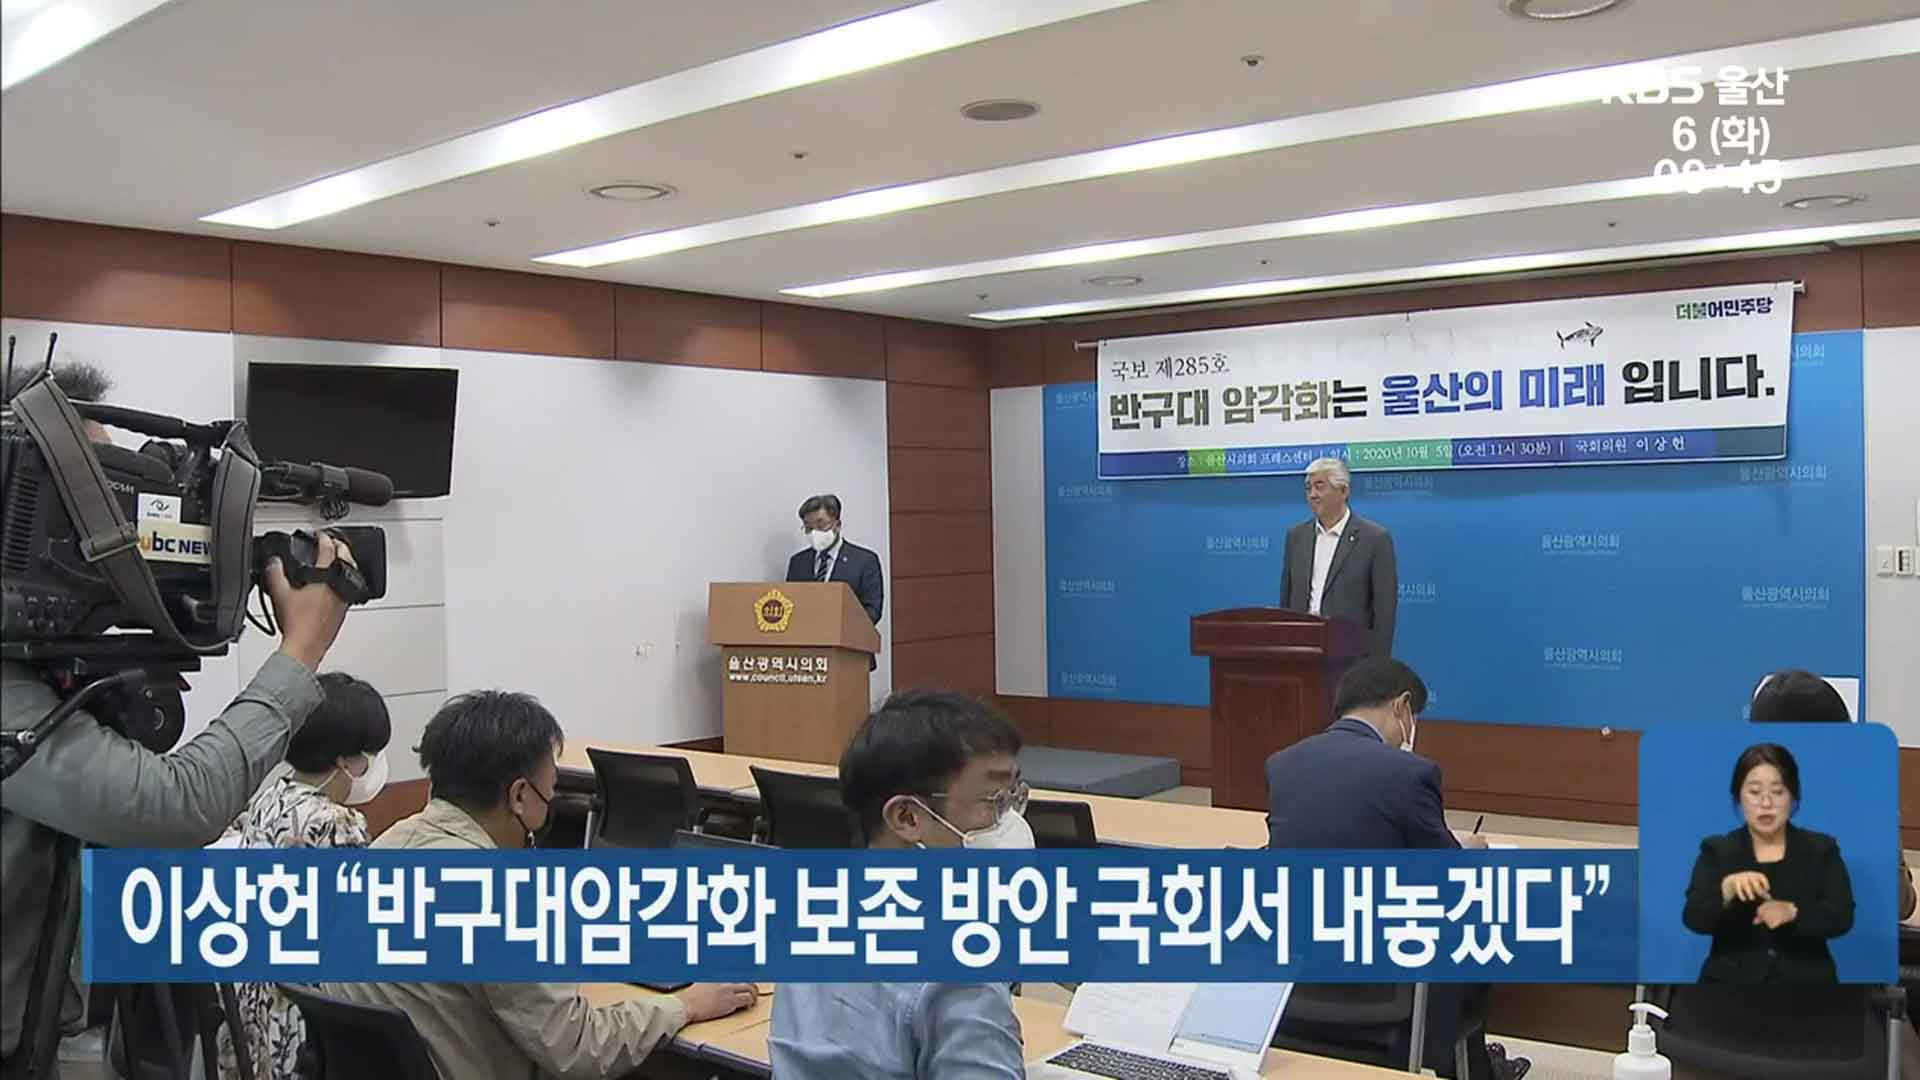 이상헌 “반구대암각화 보존 방안 국회서 내놓겠다”